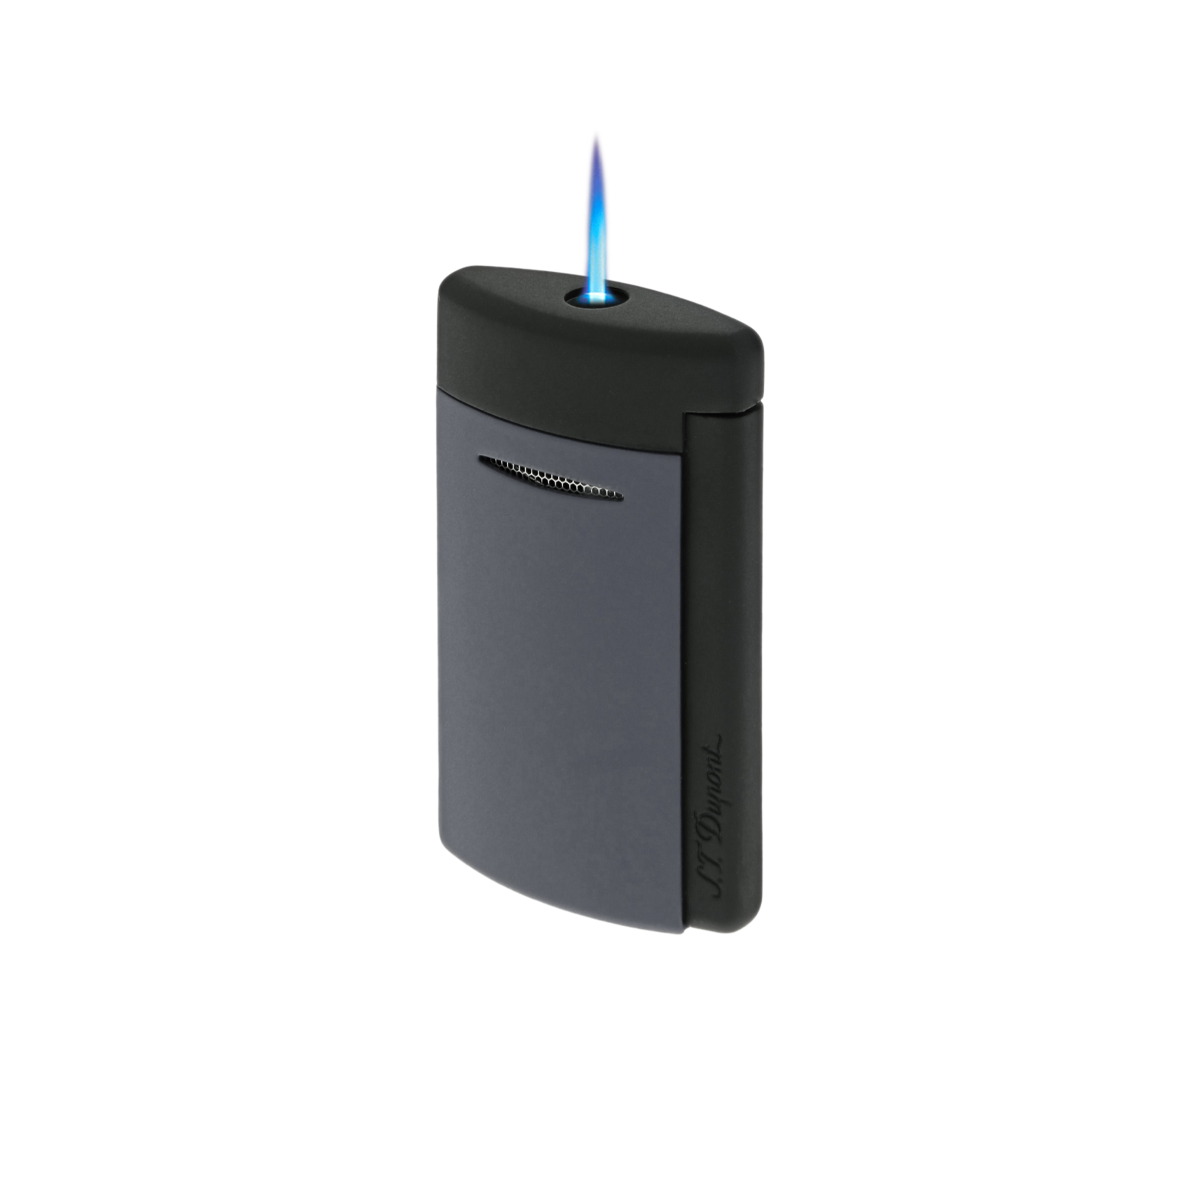 Зажигалка Minijet 10866 Цвет Серый Матовый современный лак | S.T. Dupont